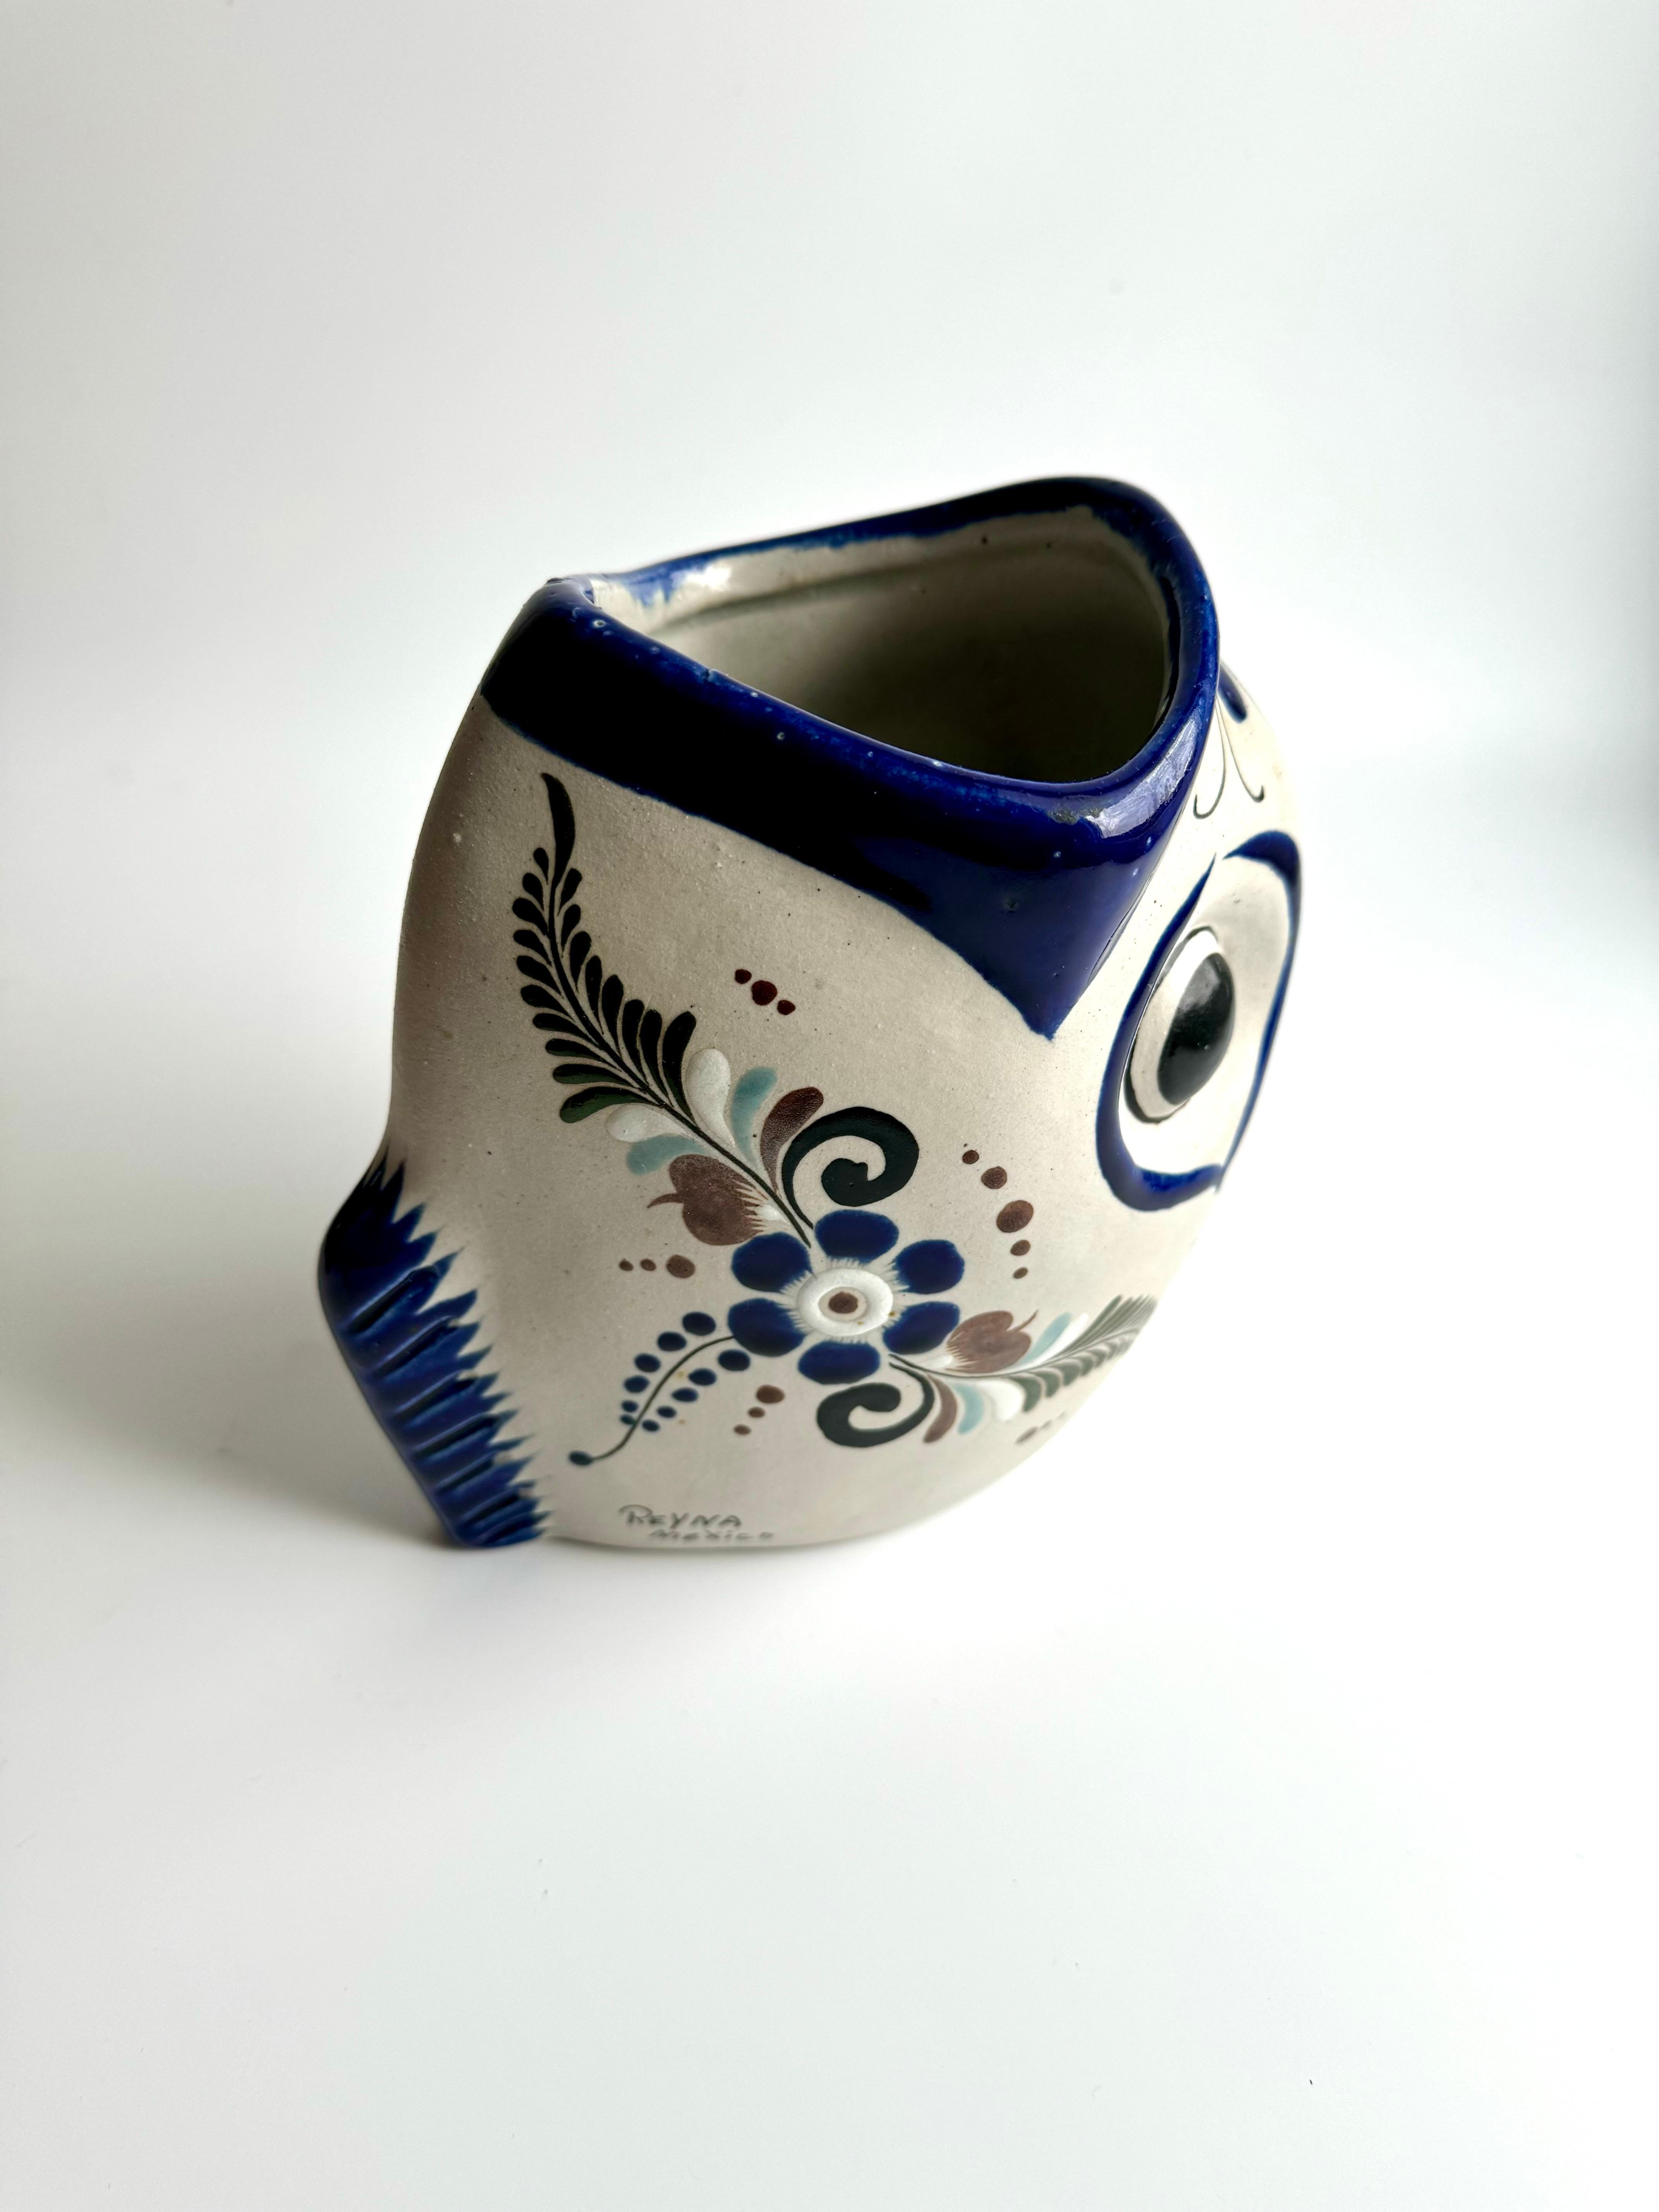 Rare vase en poterie folklorique de la ville de Tonalá au Mexique, en forme de poisson debout sur sa queue unique avec la bouche grande ouverte, les traits exagérés du visage peints à la main en bleu cobalt font de ce vase une pièce d'art unique et